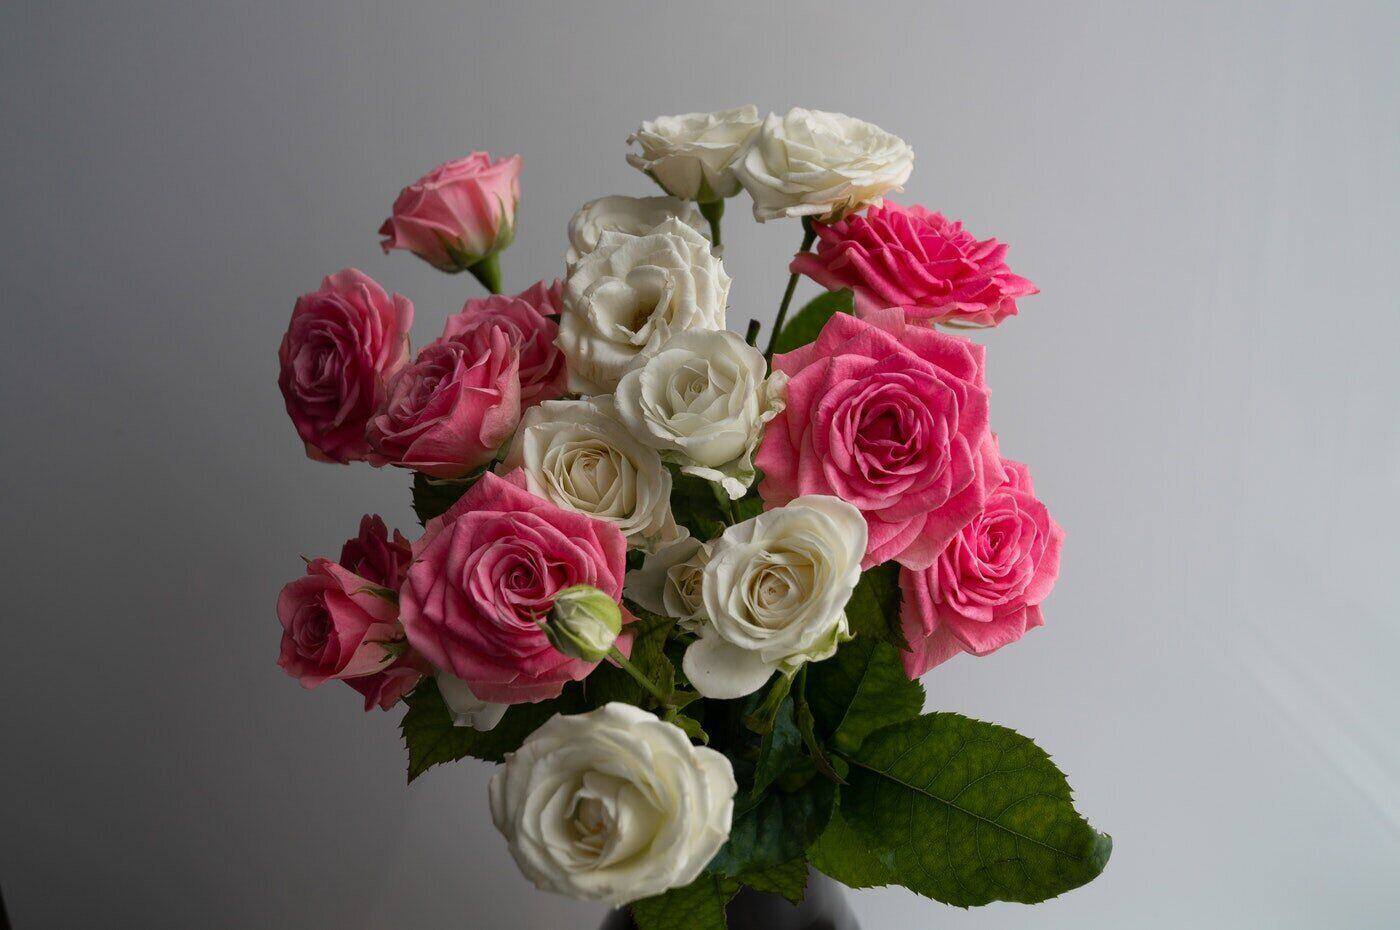 Rosa und weiße Rosen - Anleitung zum Schenken von Blumen zum ersten Mal